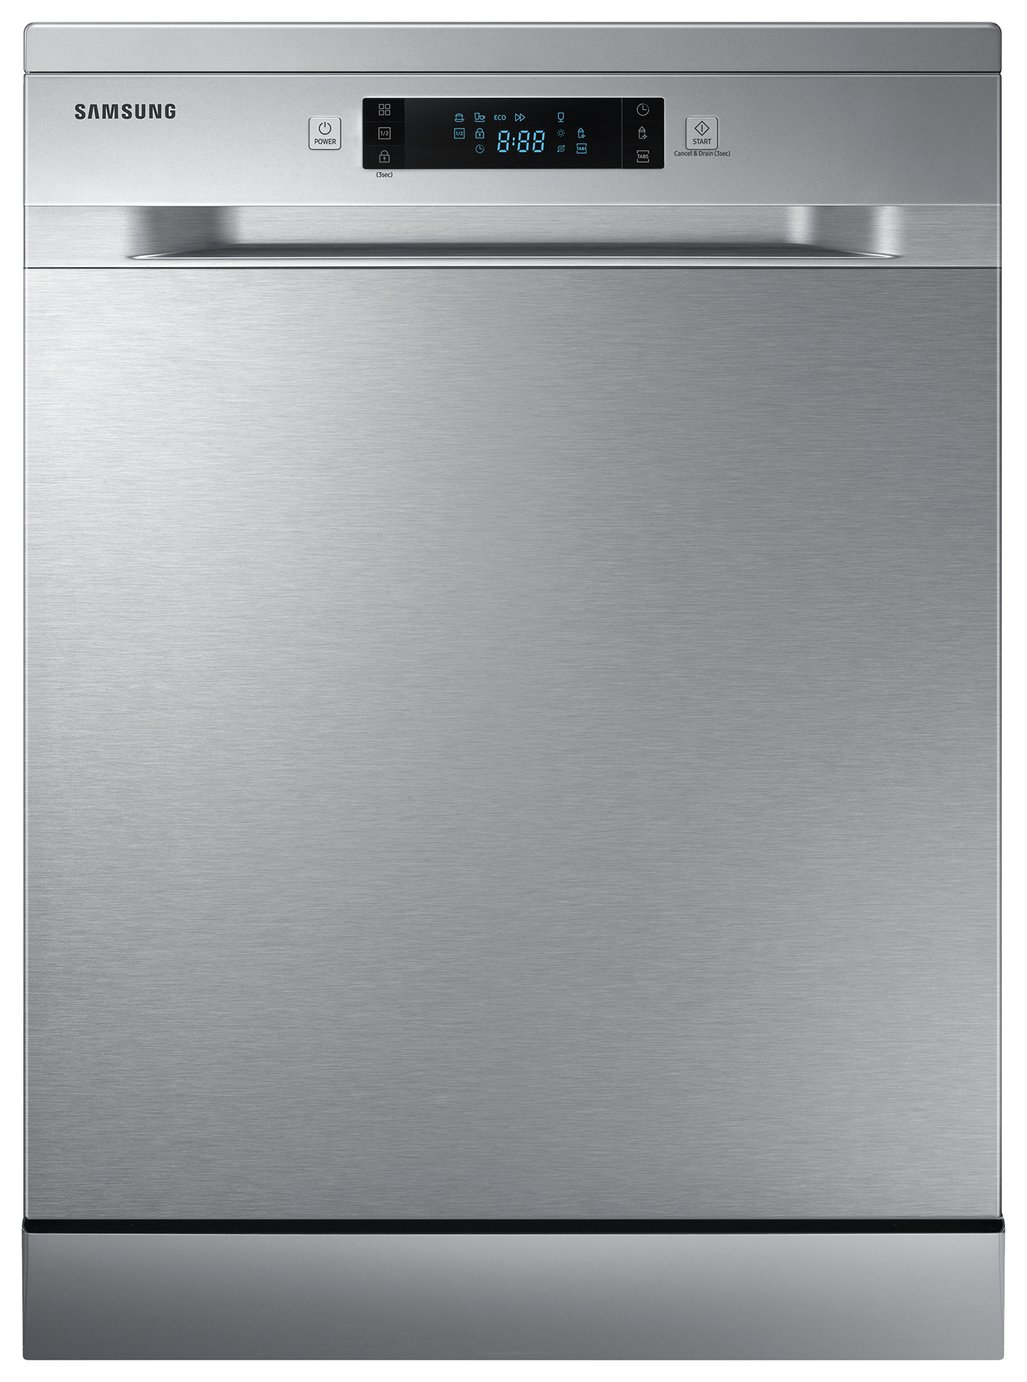 Samsung DW60M5050FS/EU Full Size Dishwasher - Silver